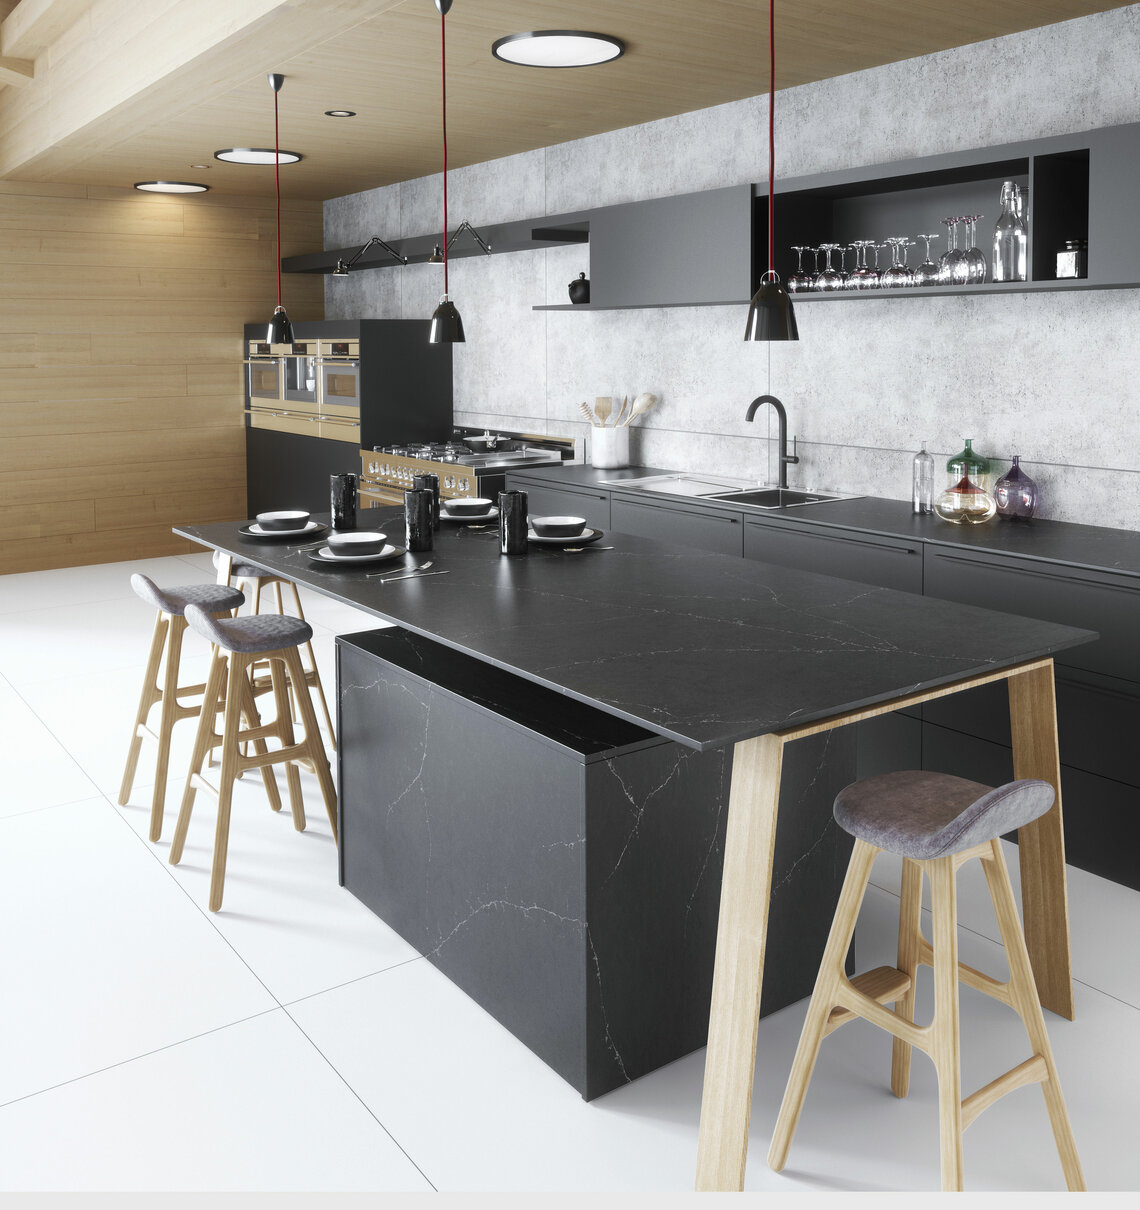 Silestone (Quarzoberfläche poliert). Küche in schwarz, polierte Oberfläche.